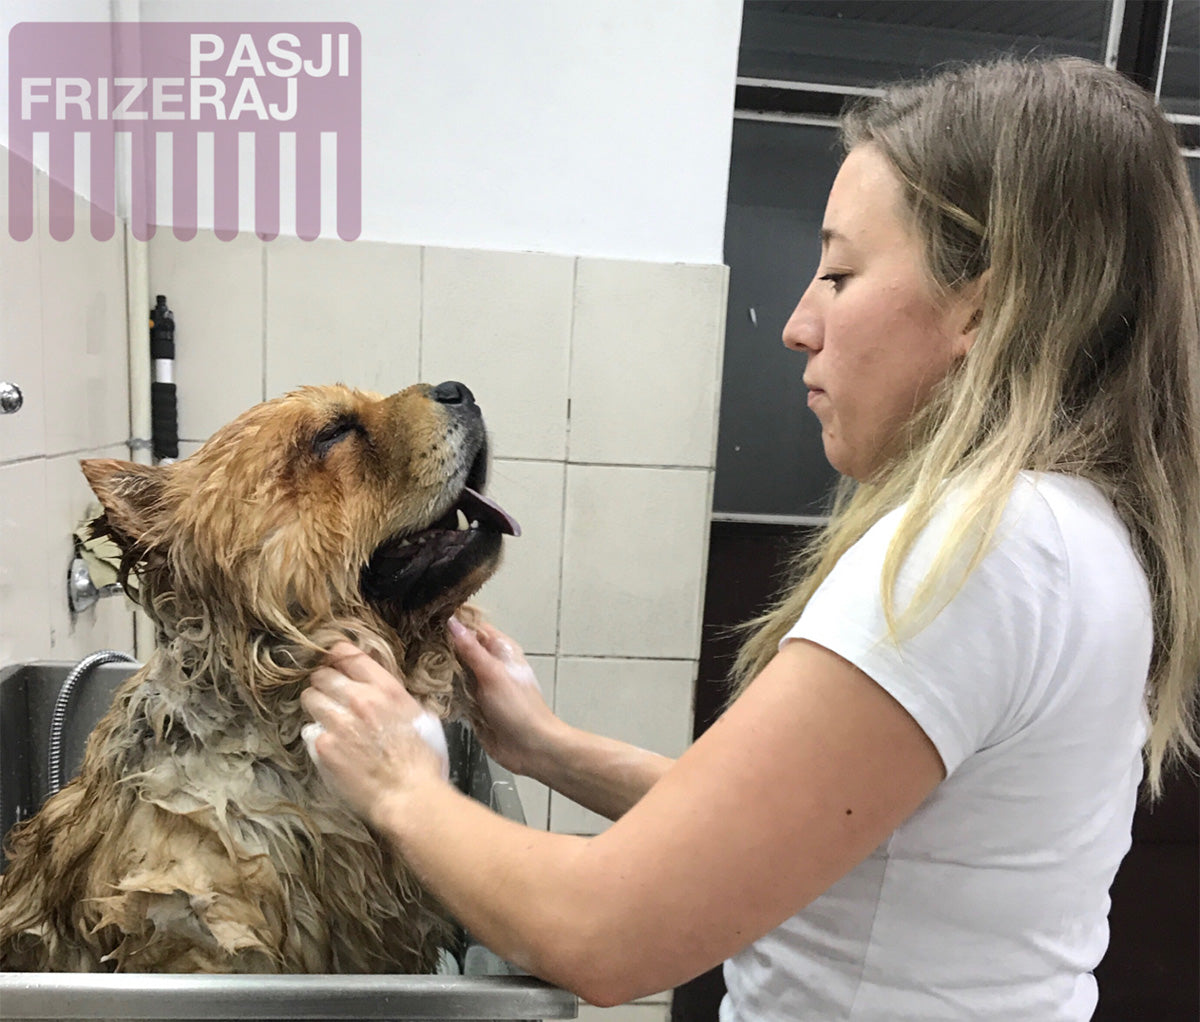 Kopanje psa z naravnim in kvalitetnim pasjim šamponom